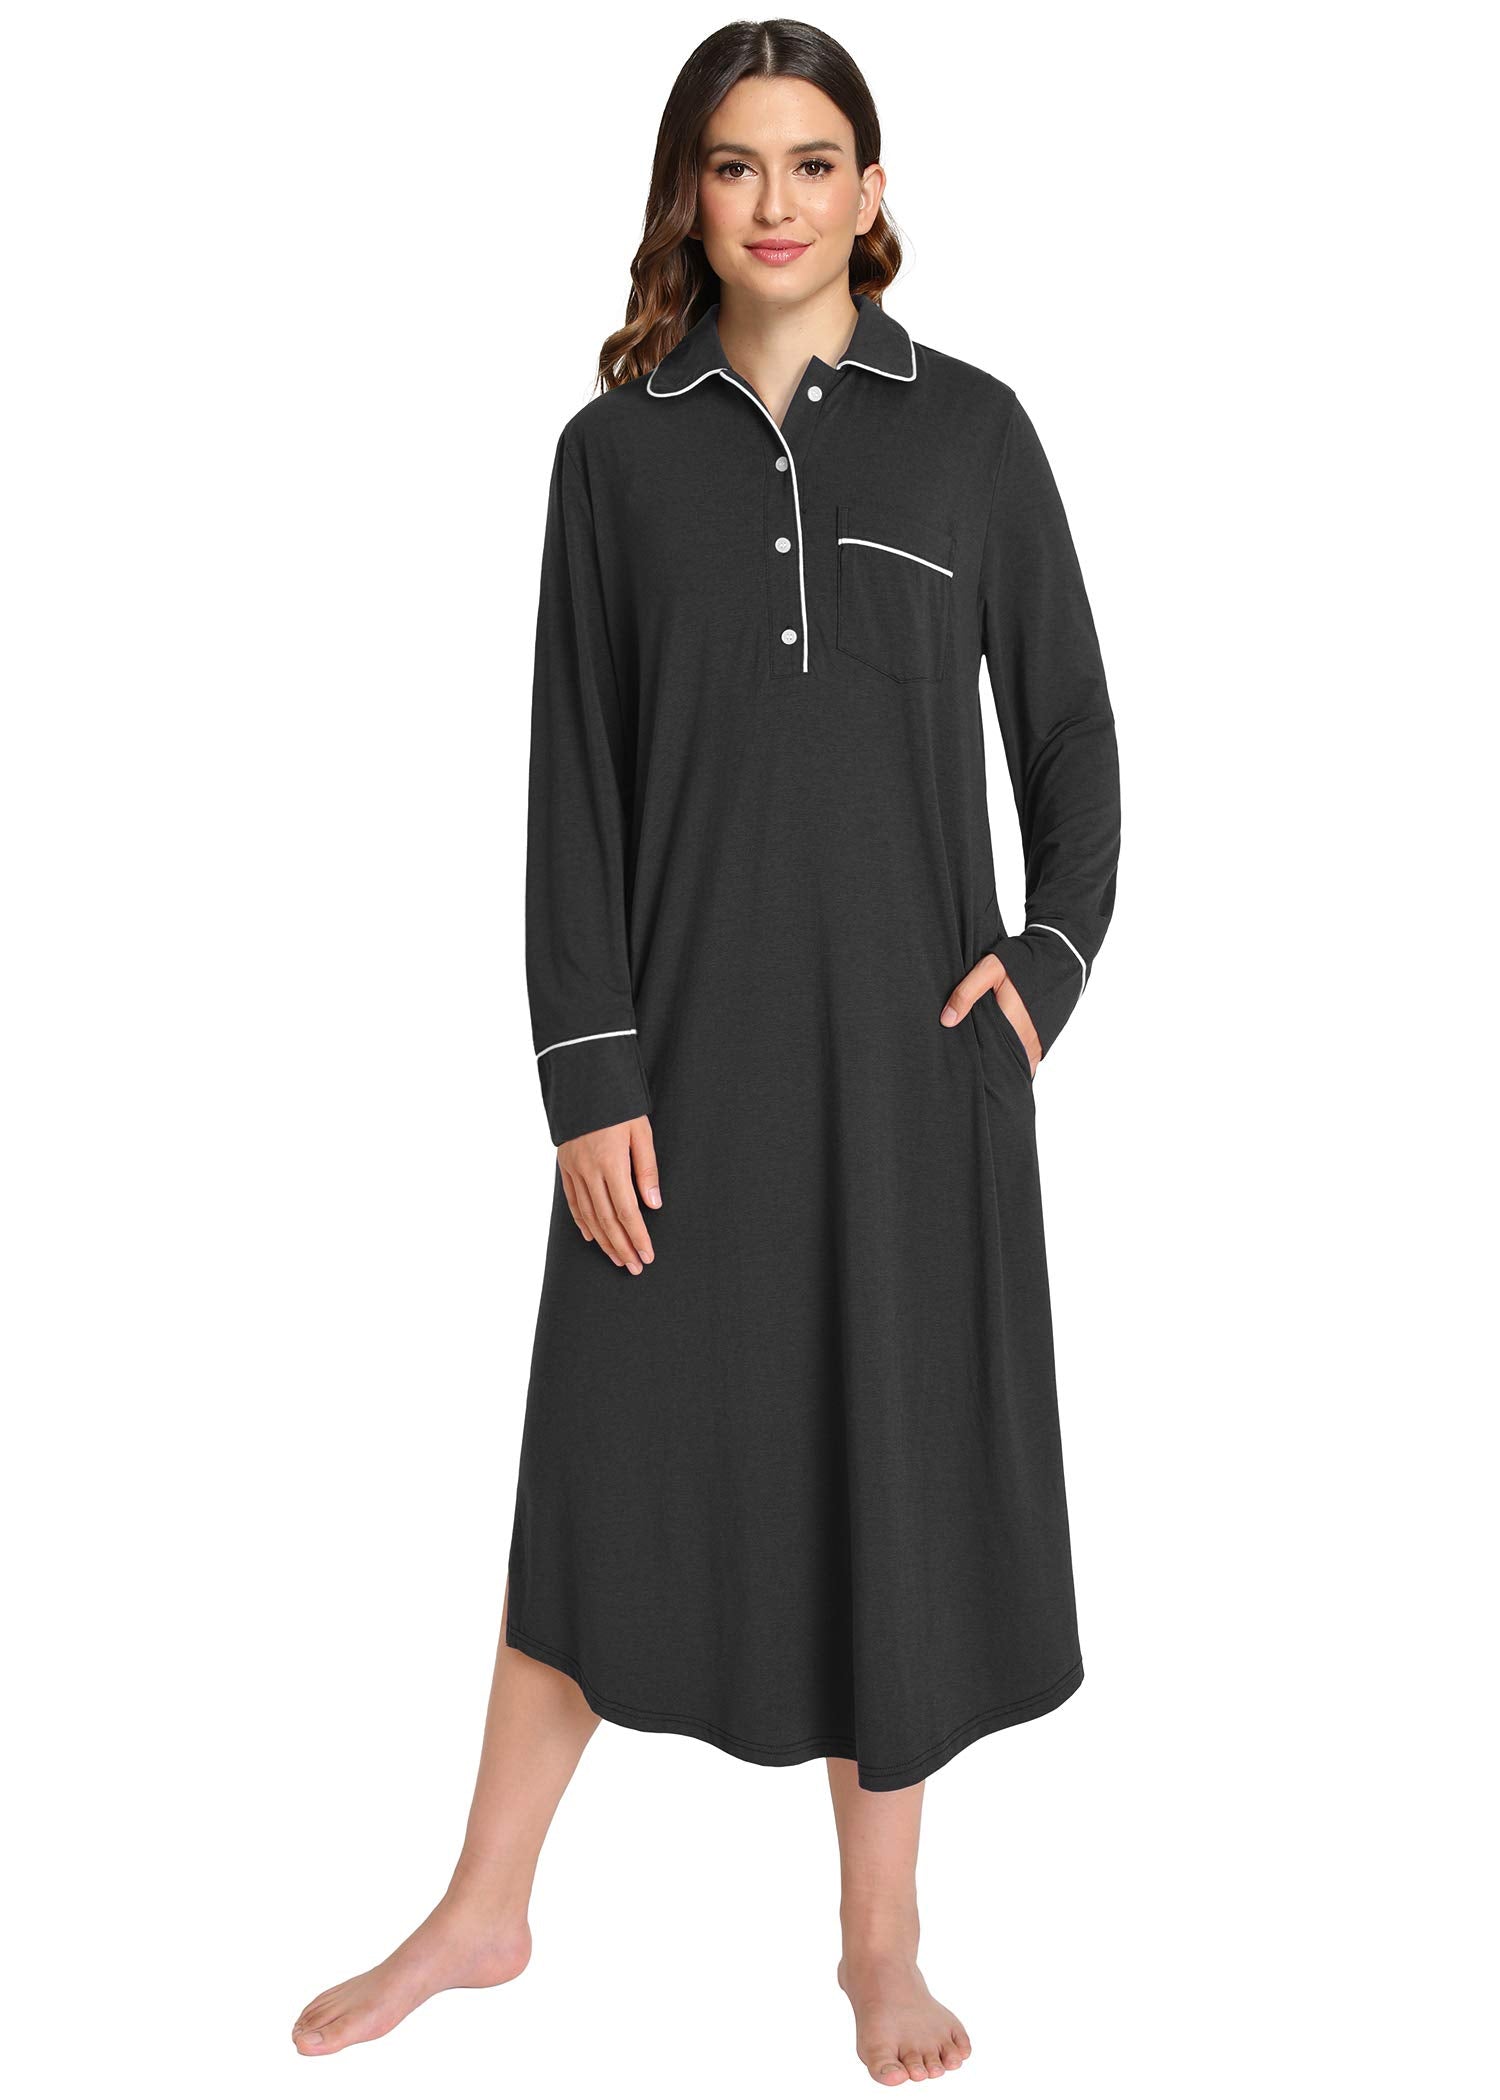 Women's Button Down Sleep Shirt Long Sleeves Nightgown - Latuza